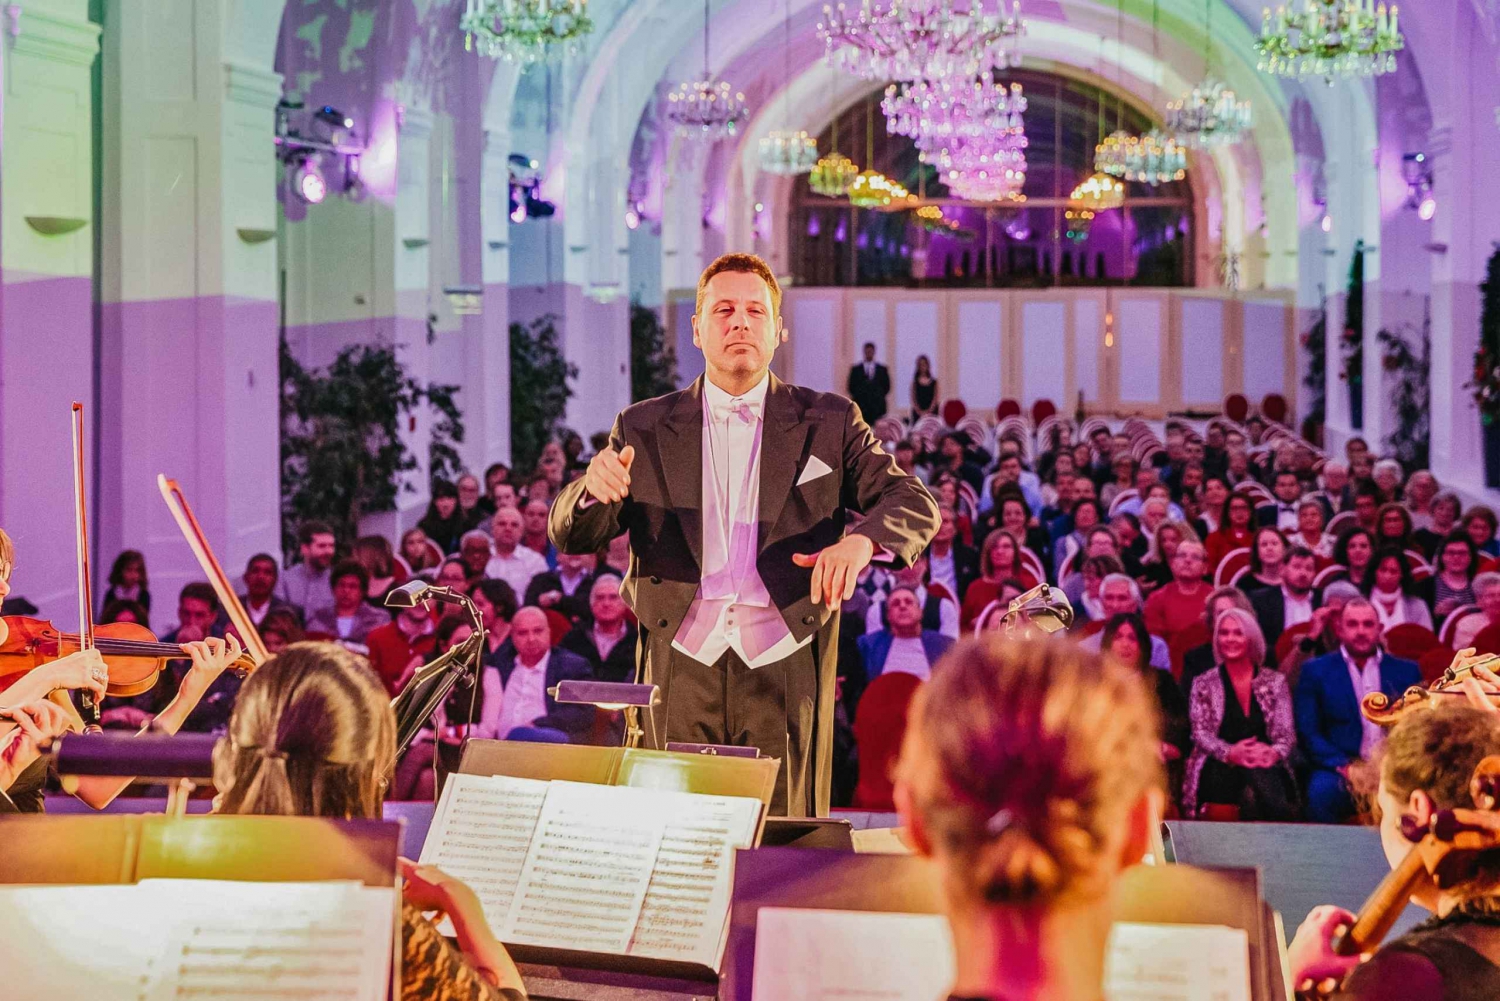 Wien: Mozart- og Strauss-konsert i Schoenbrunn